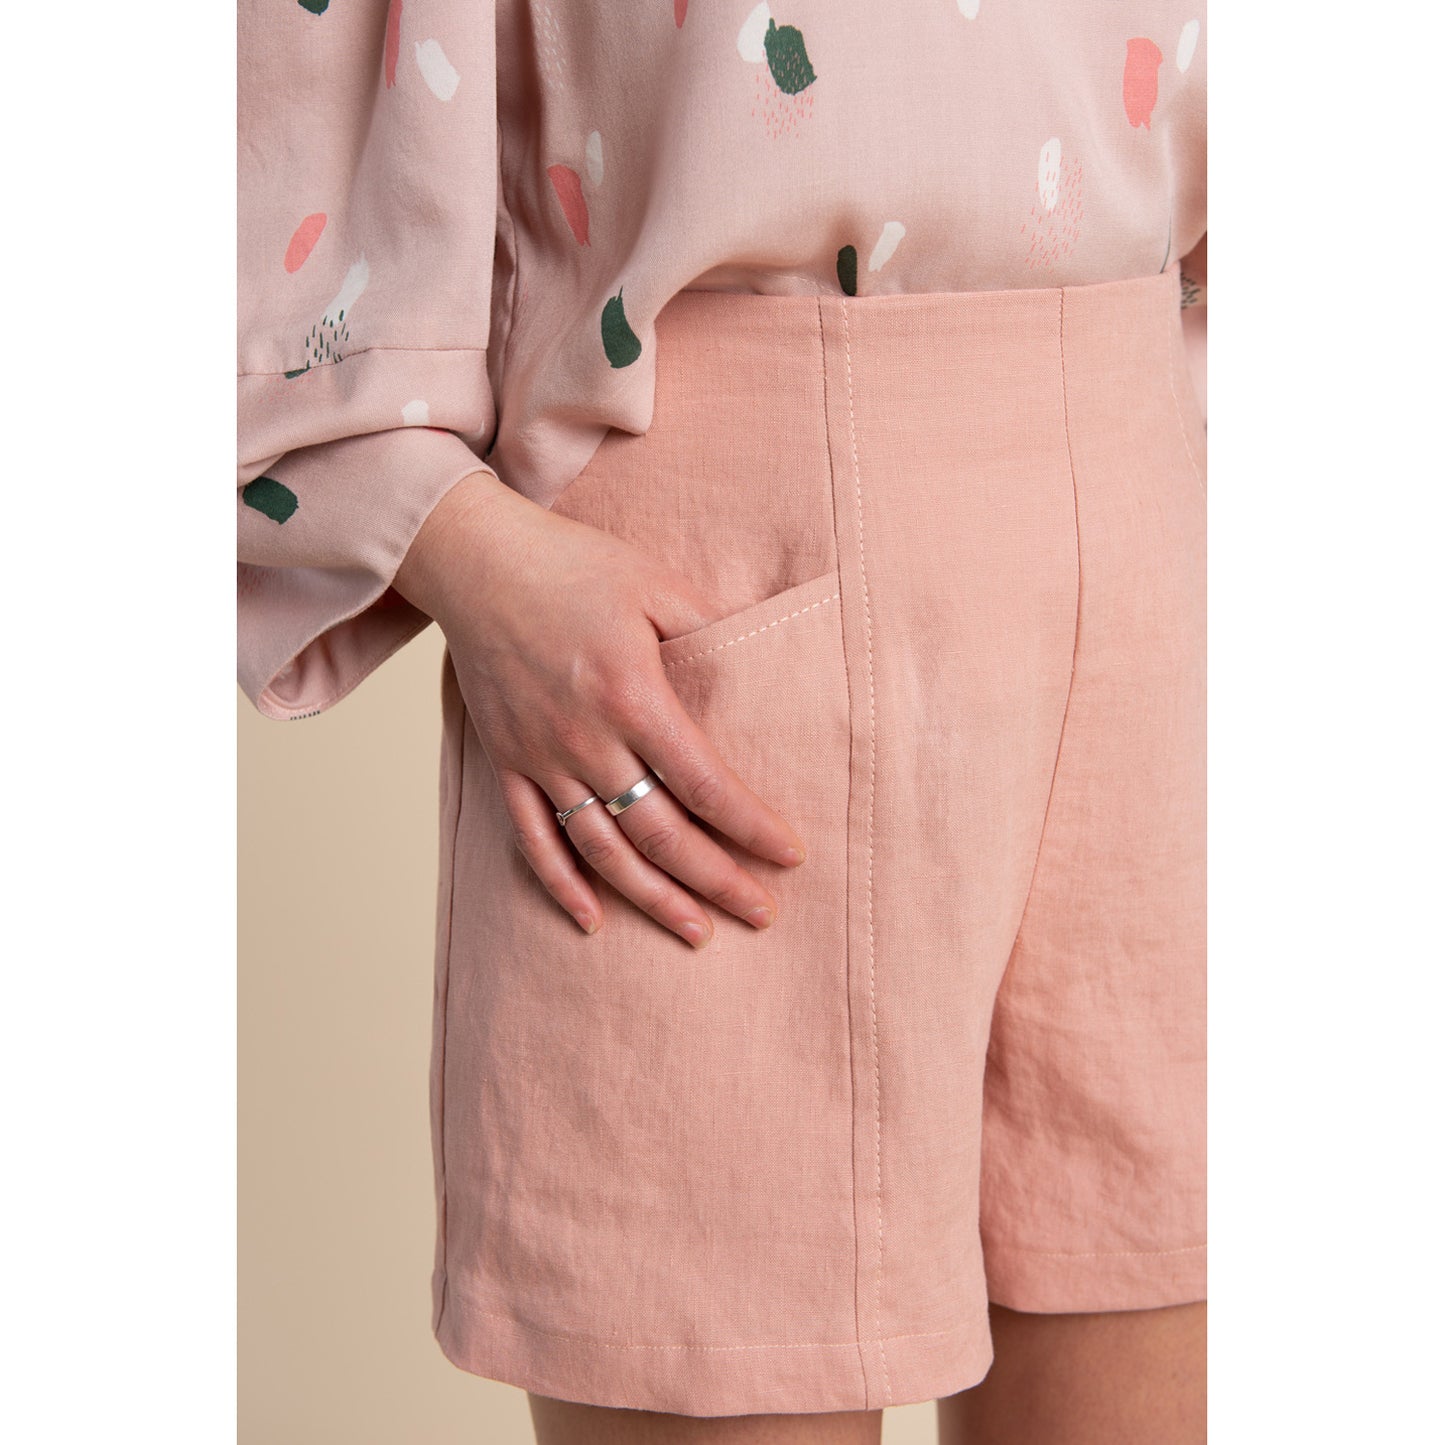 Pietra Pants and Shorts Sewing Pattern - Closet Core Patterns